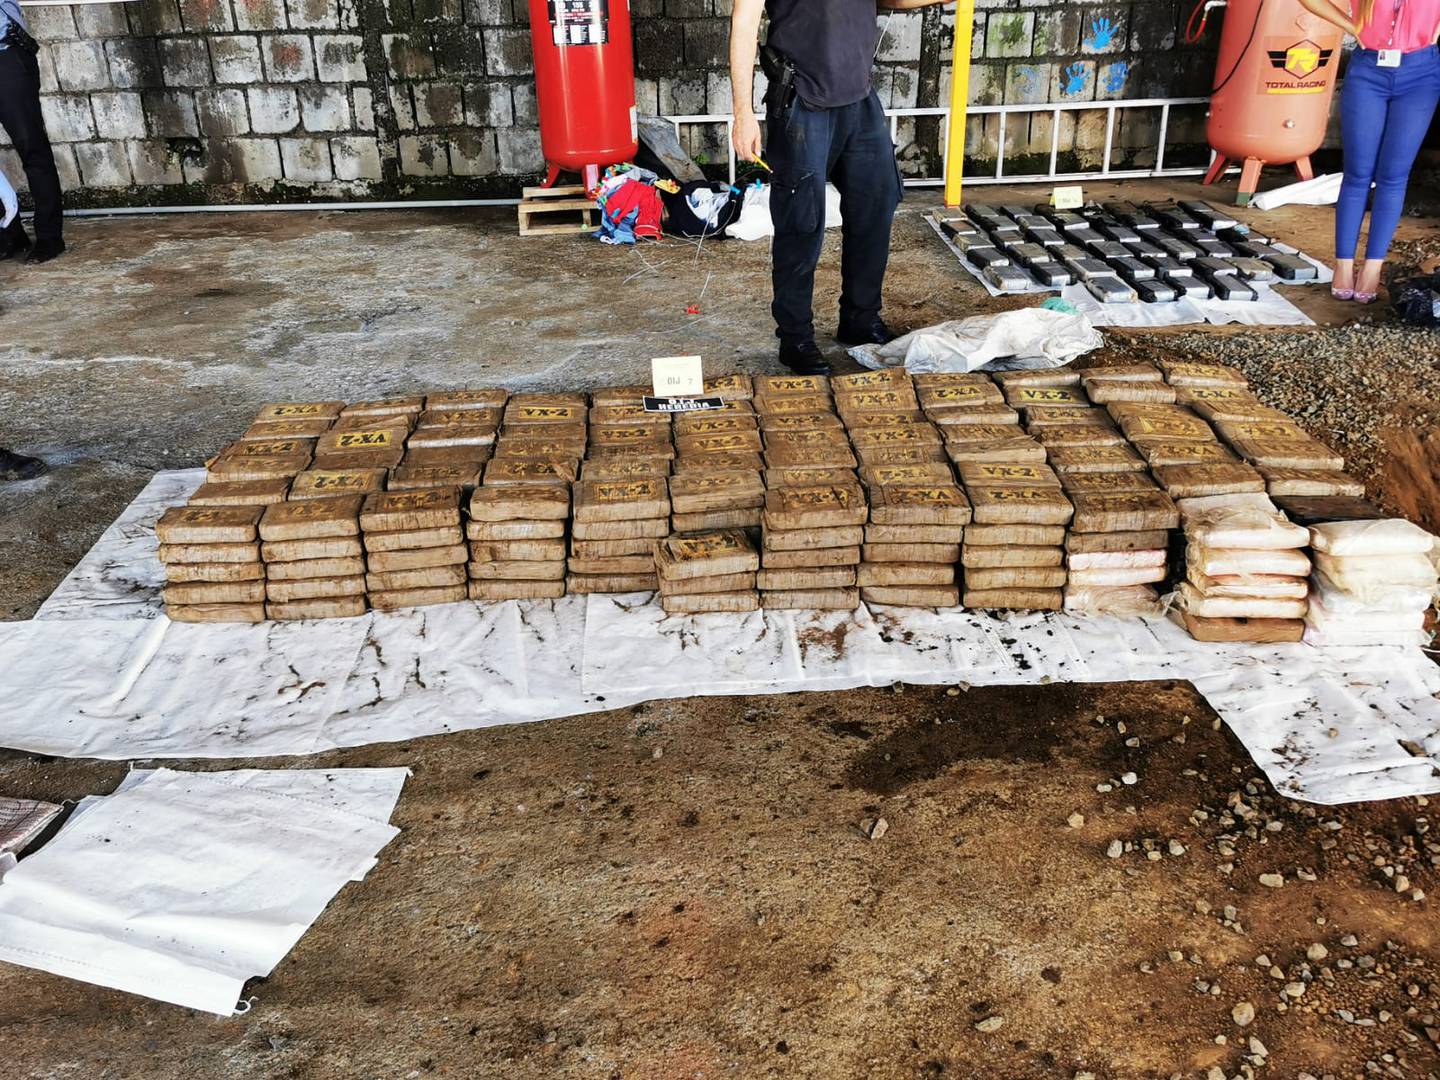 OIJ halla 449 kilos de cocaína enterrados en propiedad donde se encontraba un lavacar en Heredia. Foto OIJ.